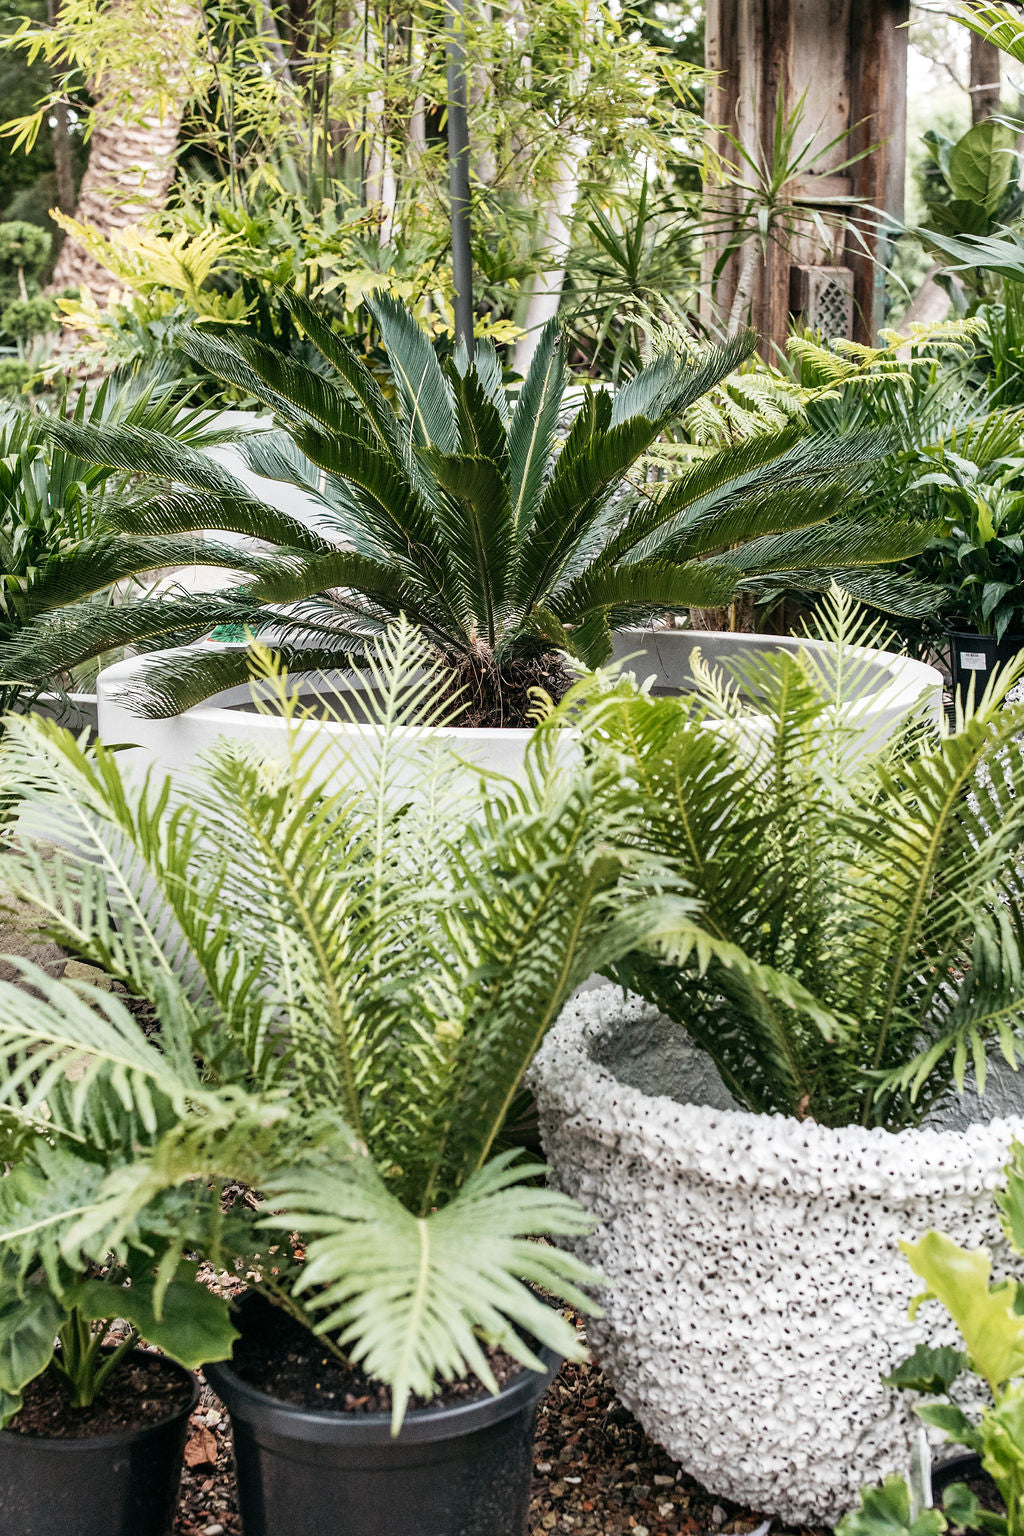 Cycad - Sago Palm (Cycas revoluta)